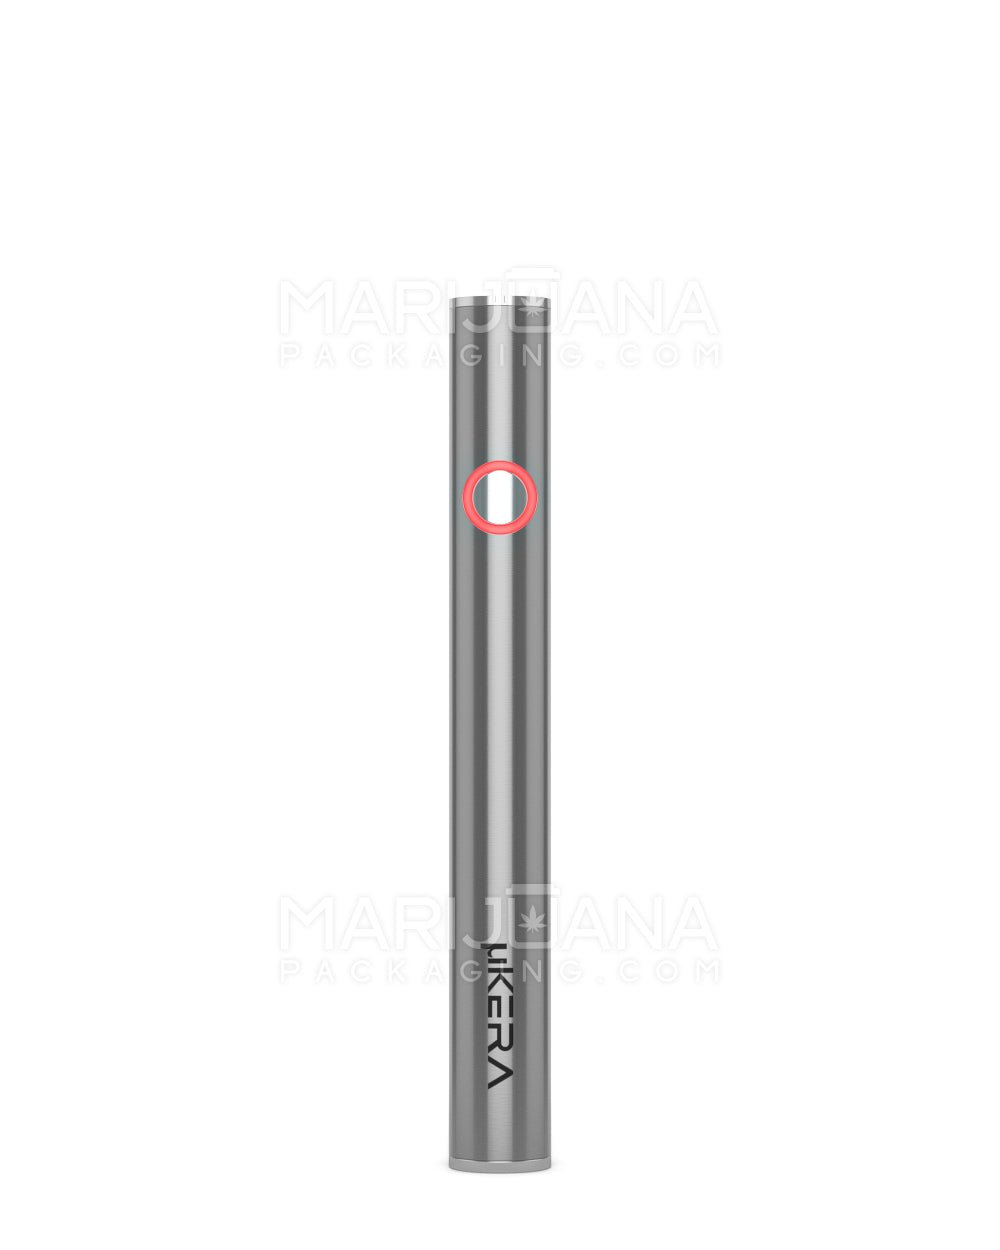 Buttonless Vape Pen Battery, 510 Thread Autodraw Stylus